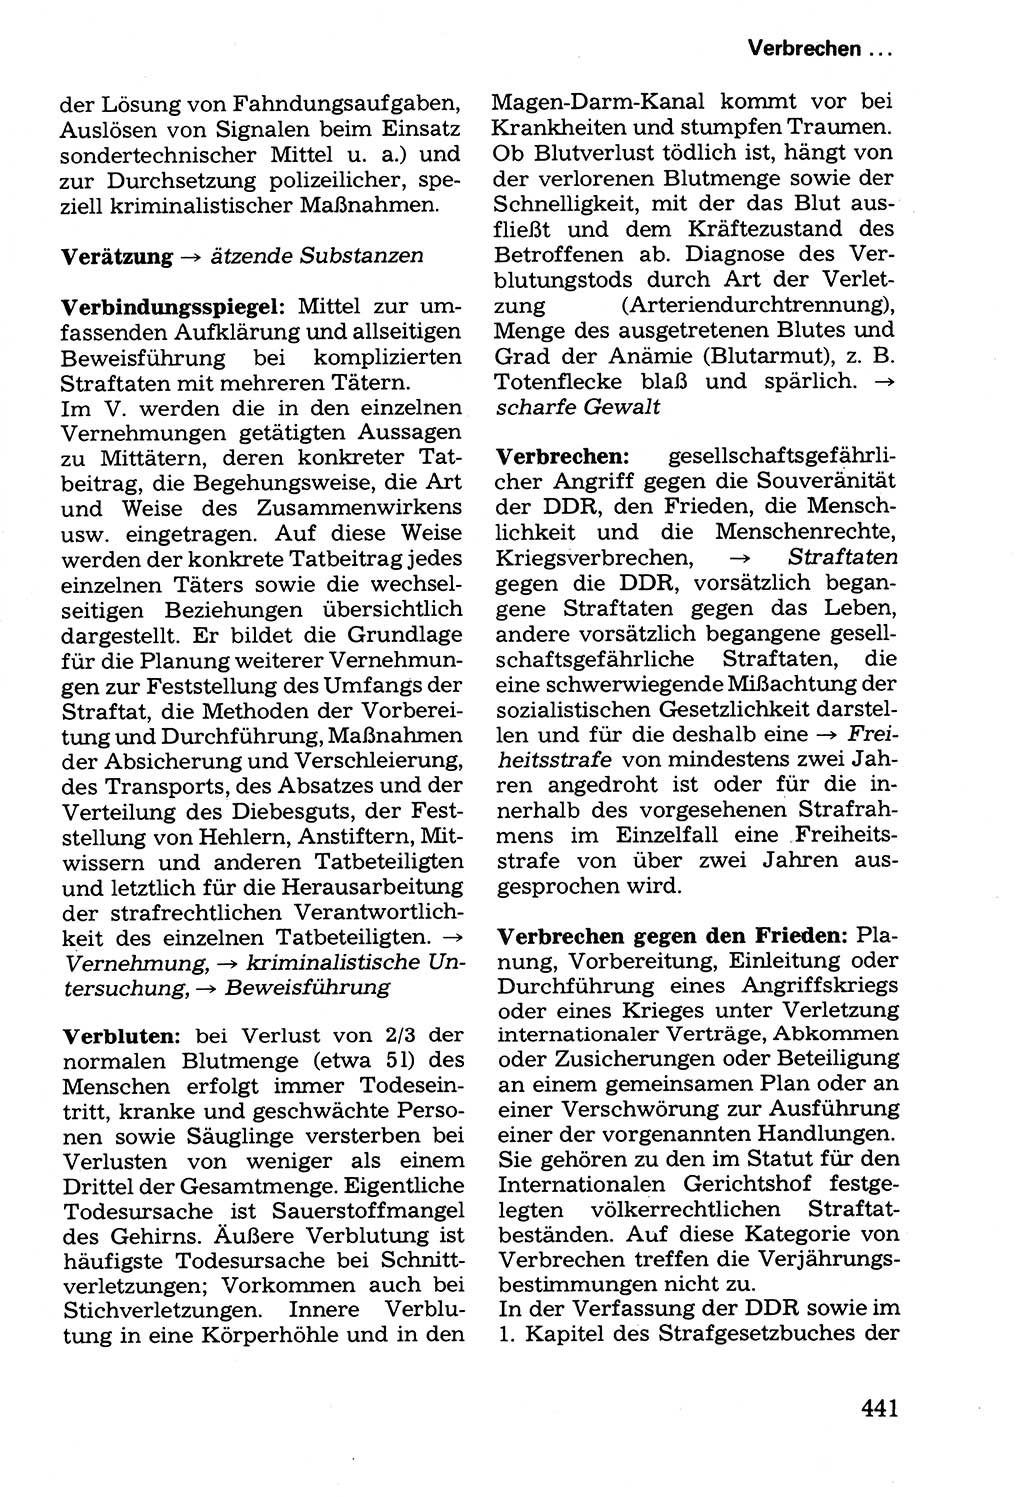 Wörterbuch der sozialistischen Kriminalistik [Deutsche Demokratische Republik (DDR)] 1981, Seite 441 (Wb. soz. Krim. DDR 1981, S. 441)